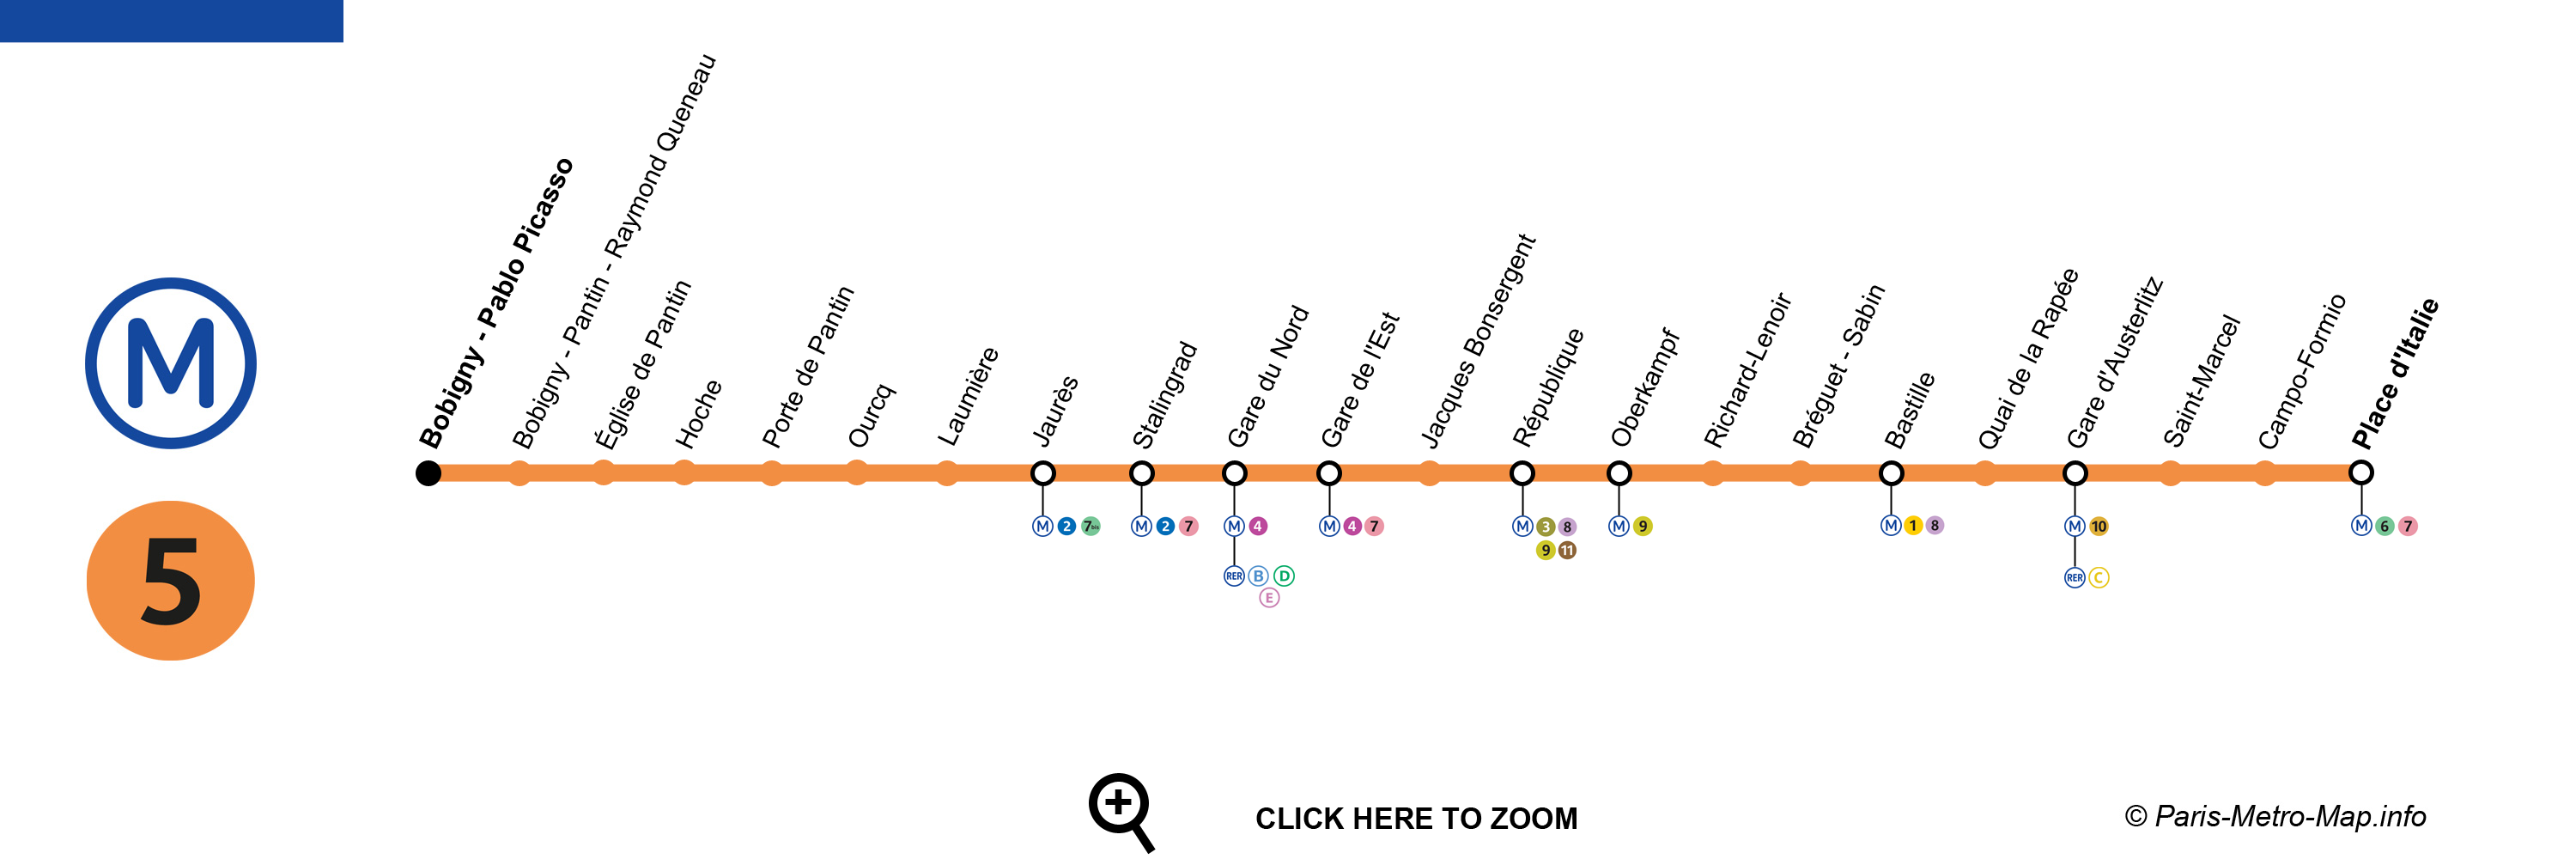 Paris Metro Map Kml